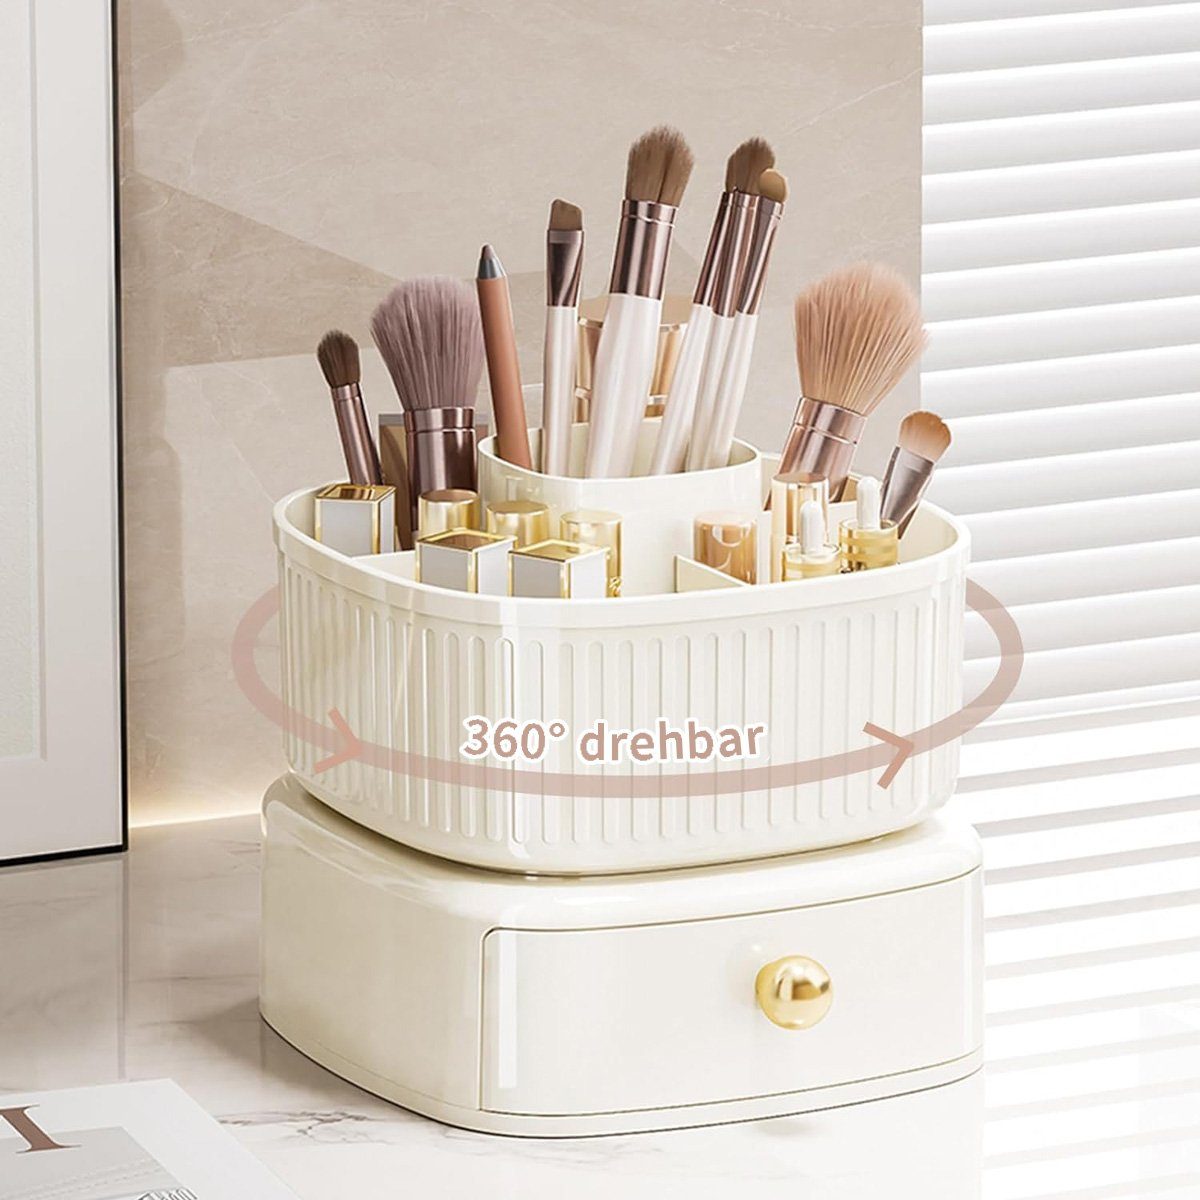 götäzer Make-Up Organizer Leichte Luxus-Kosmetik-Aufbewahrungsbox, 360° drehbare Bürsten-Aufbewahrungsbox mit Schublade Gelb